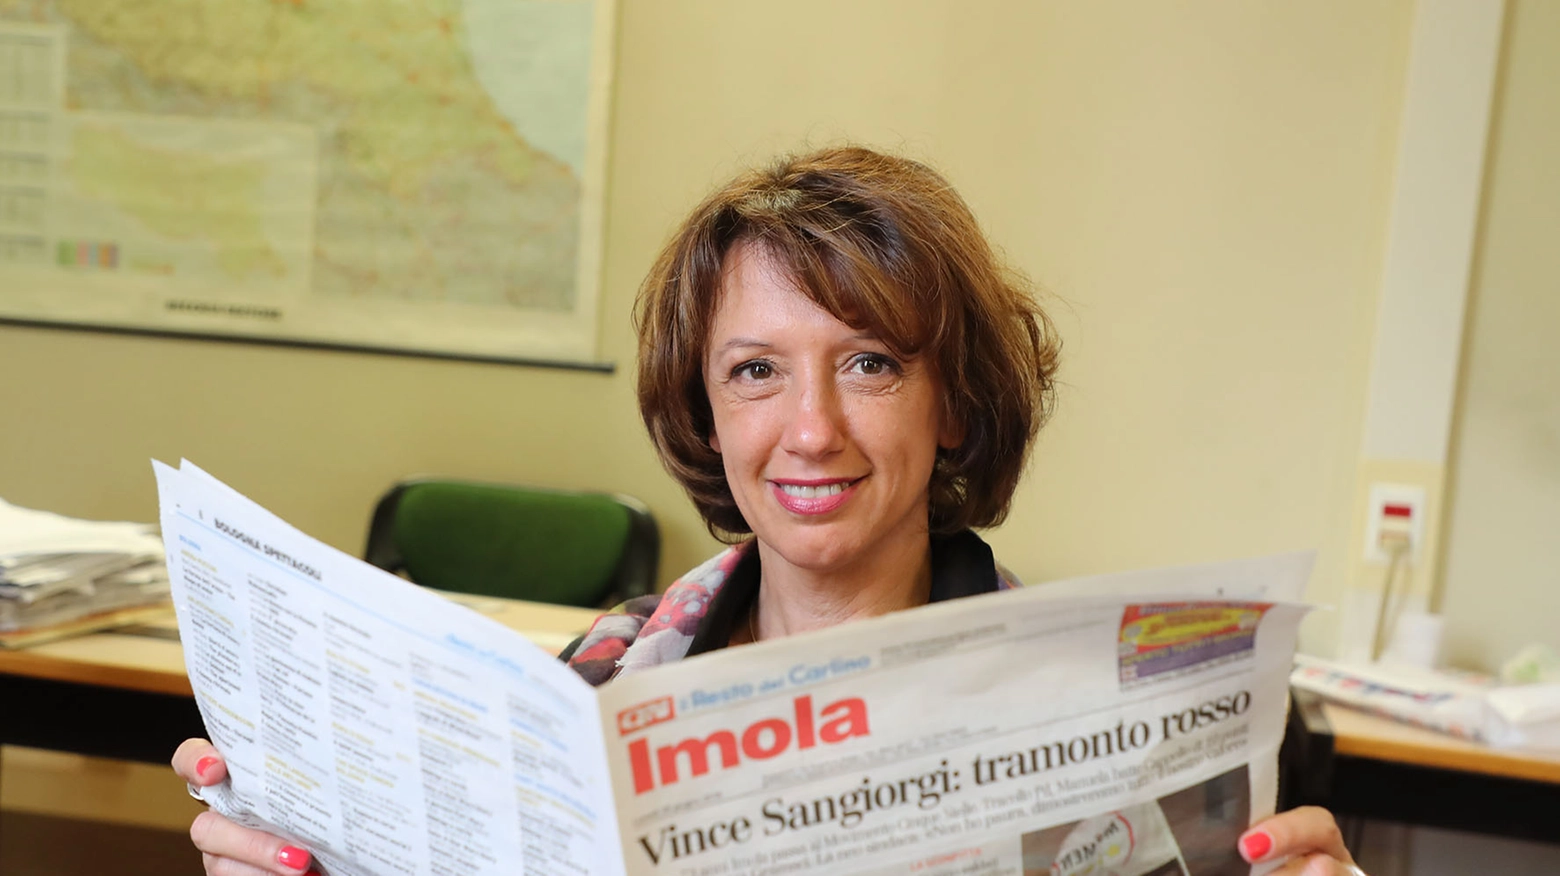 Manuela Sangiorgi, intenta a sfogliare il Carlino (Isolapress)